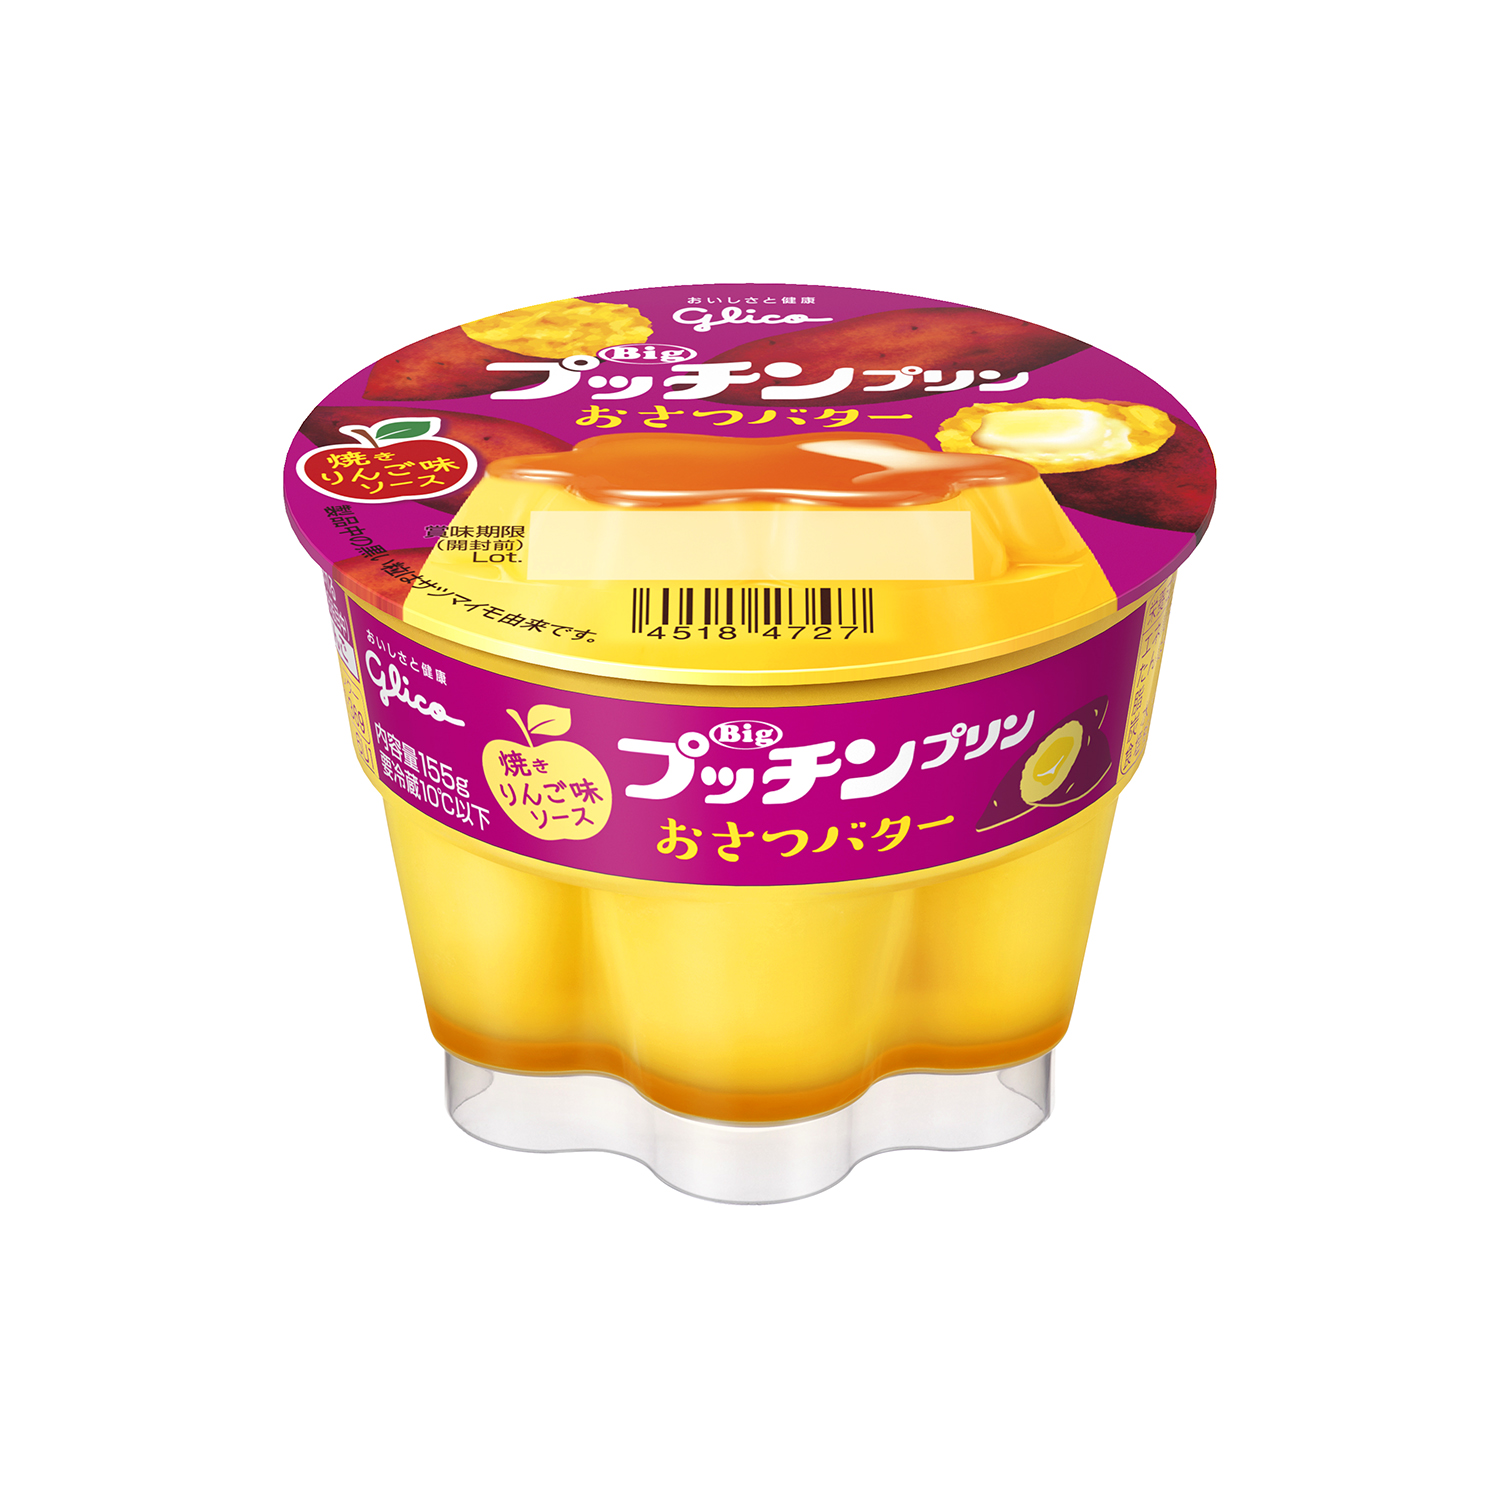 プッチンプリン おさつバター 焼きりんご味ソース サツマイモプリンに焼きりんご味ソープをプラスした限定の味 Emo Miu エモミュー